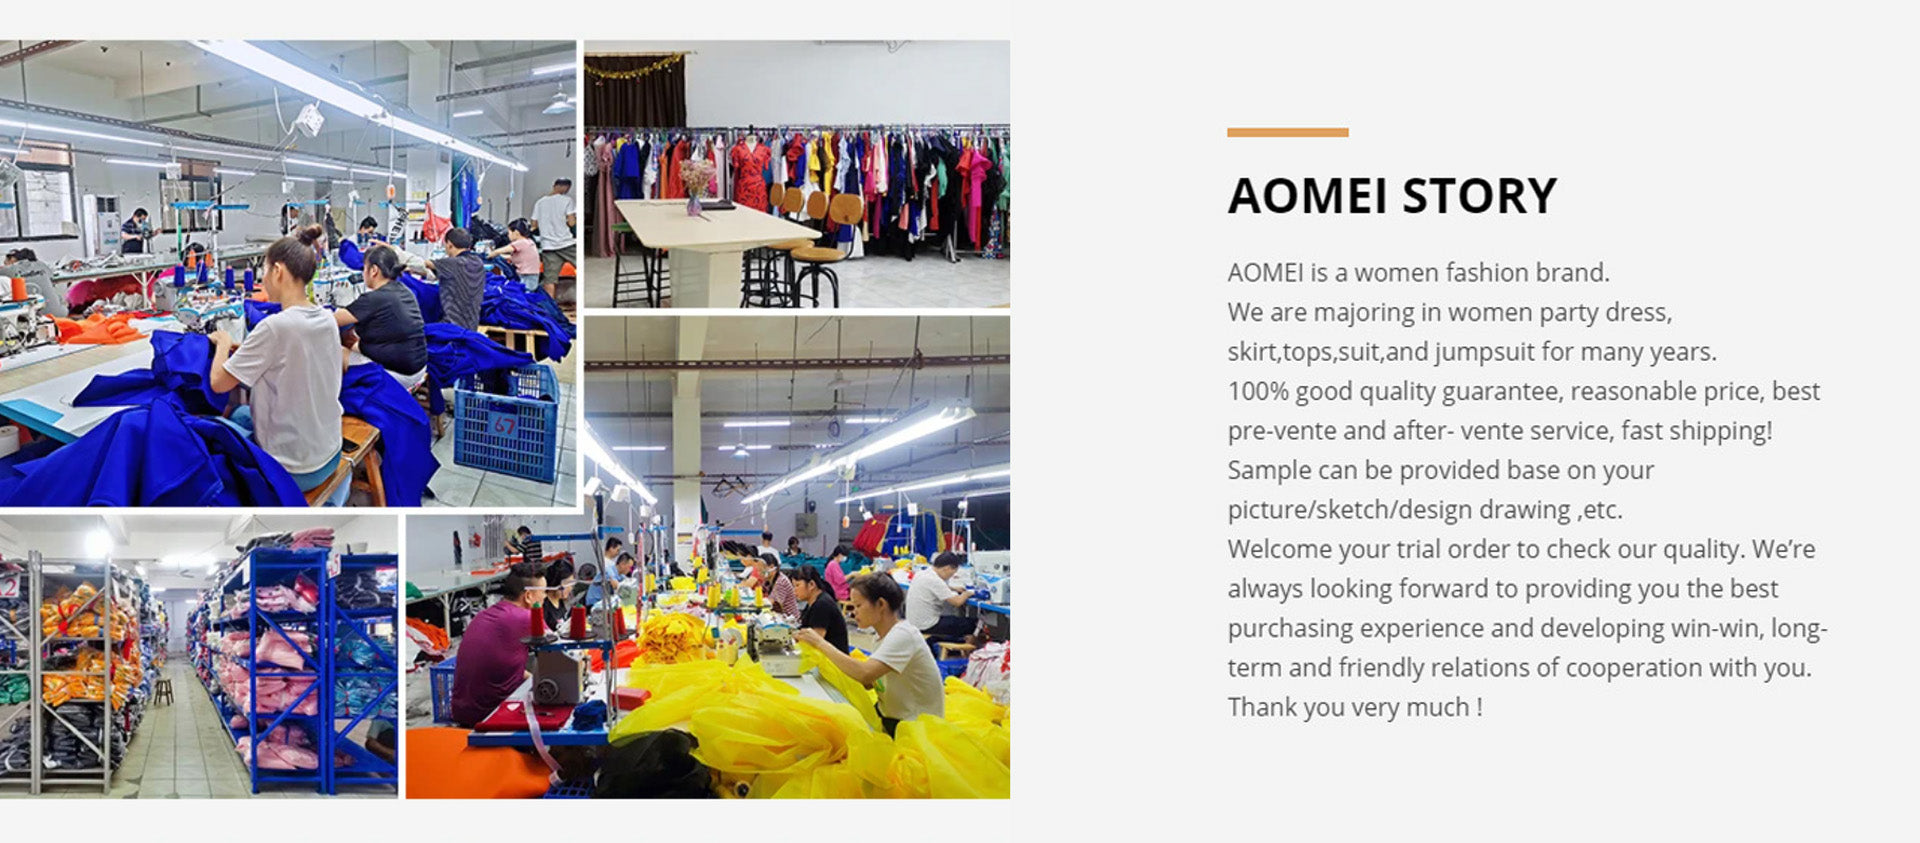 AOMEI official store,AOMEI fashion store,AOMEI dress store,AOMEI shop,AOMEI onlinek,AOMEI mall,AOMEI boutique,AOMEI party dresses